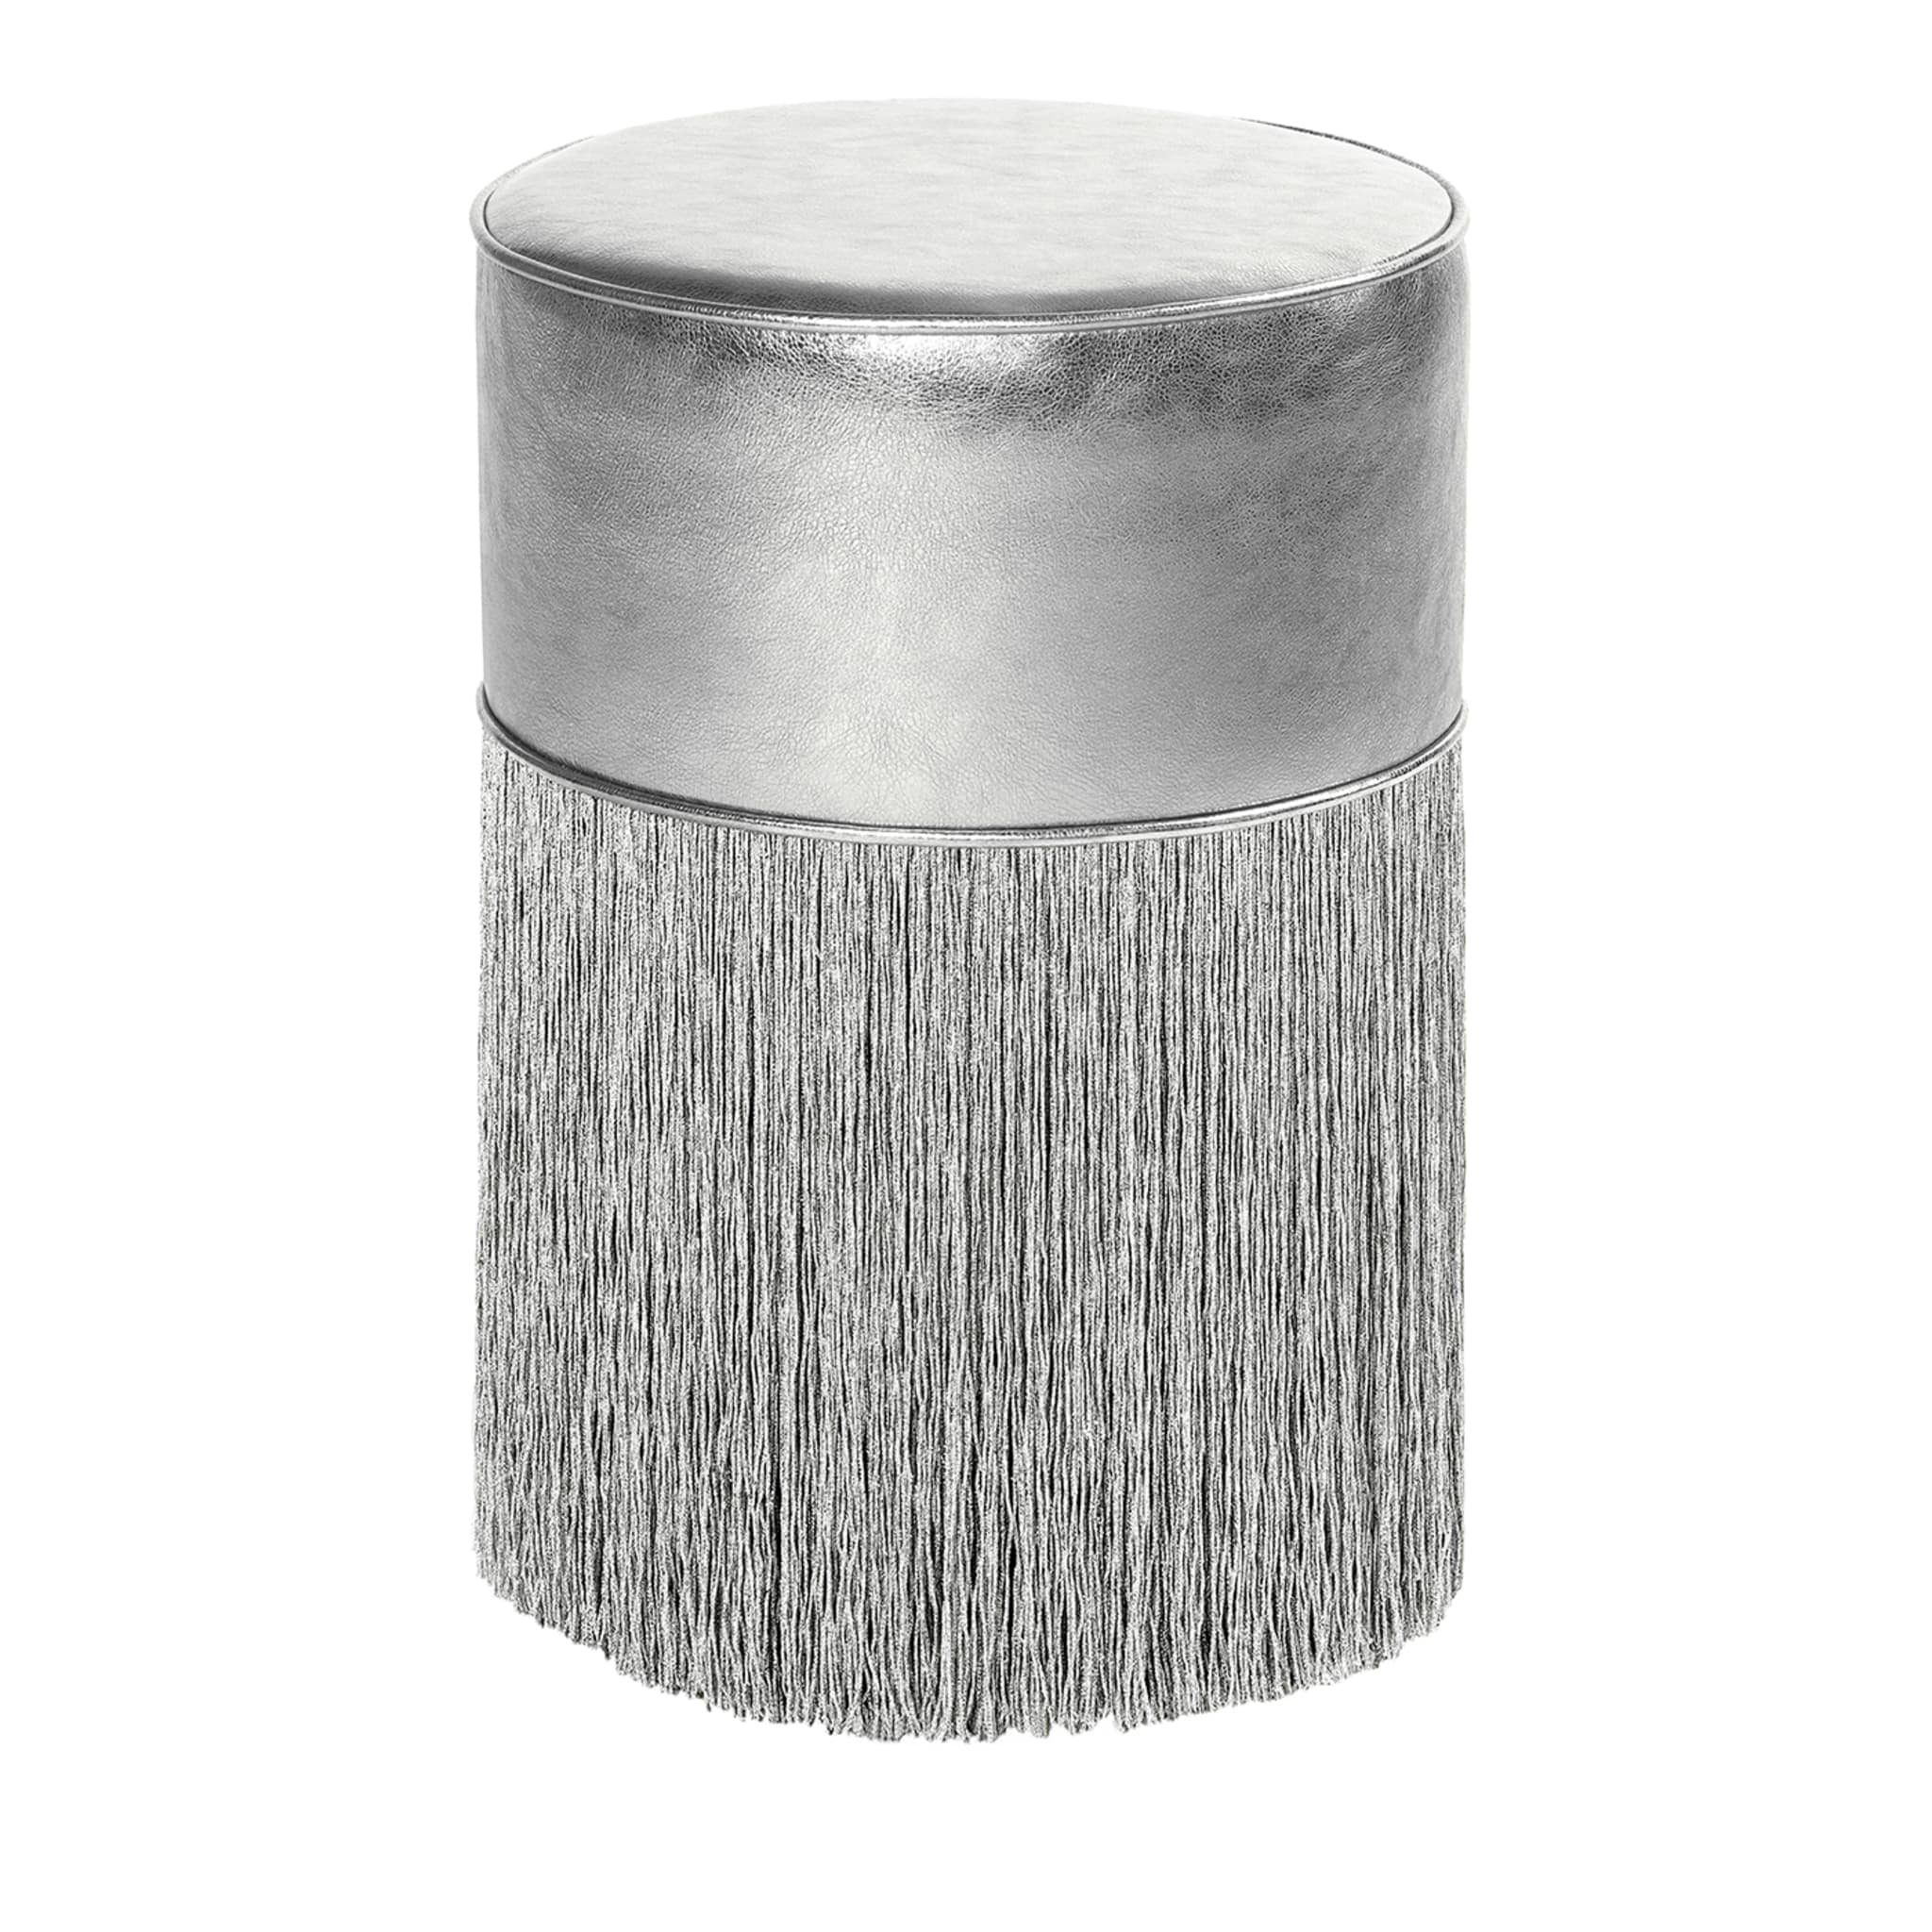 Pouf in pelle metallizzata argento brillante di Lorenza Bozzoli - Vista principale